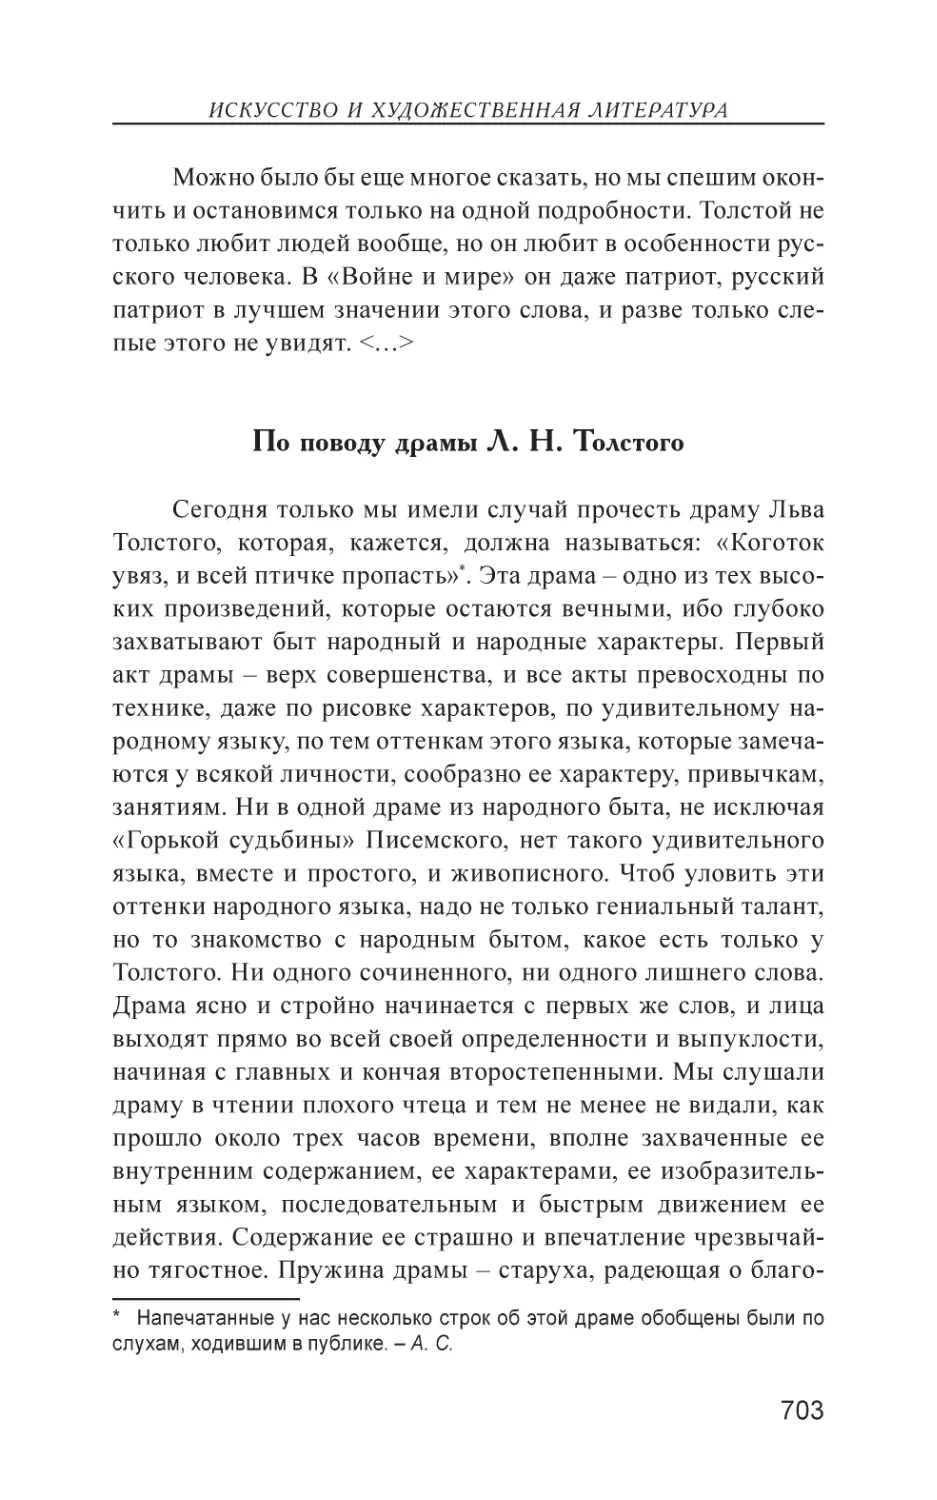 По поводу драмы Л. Н. Толстого